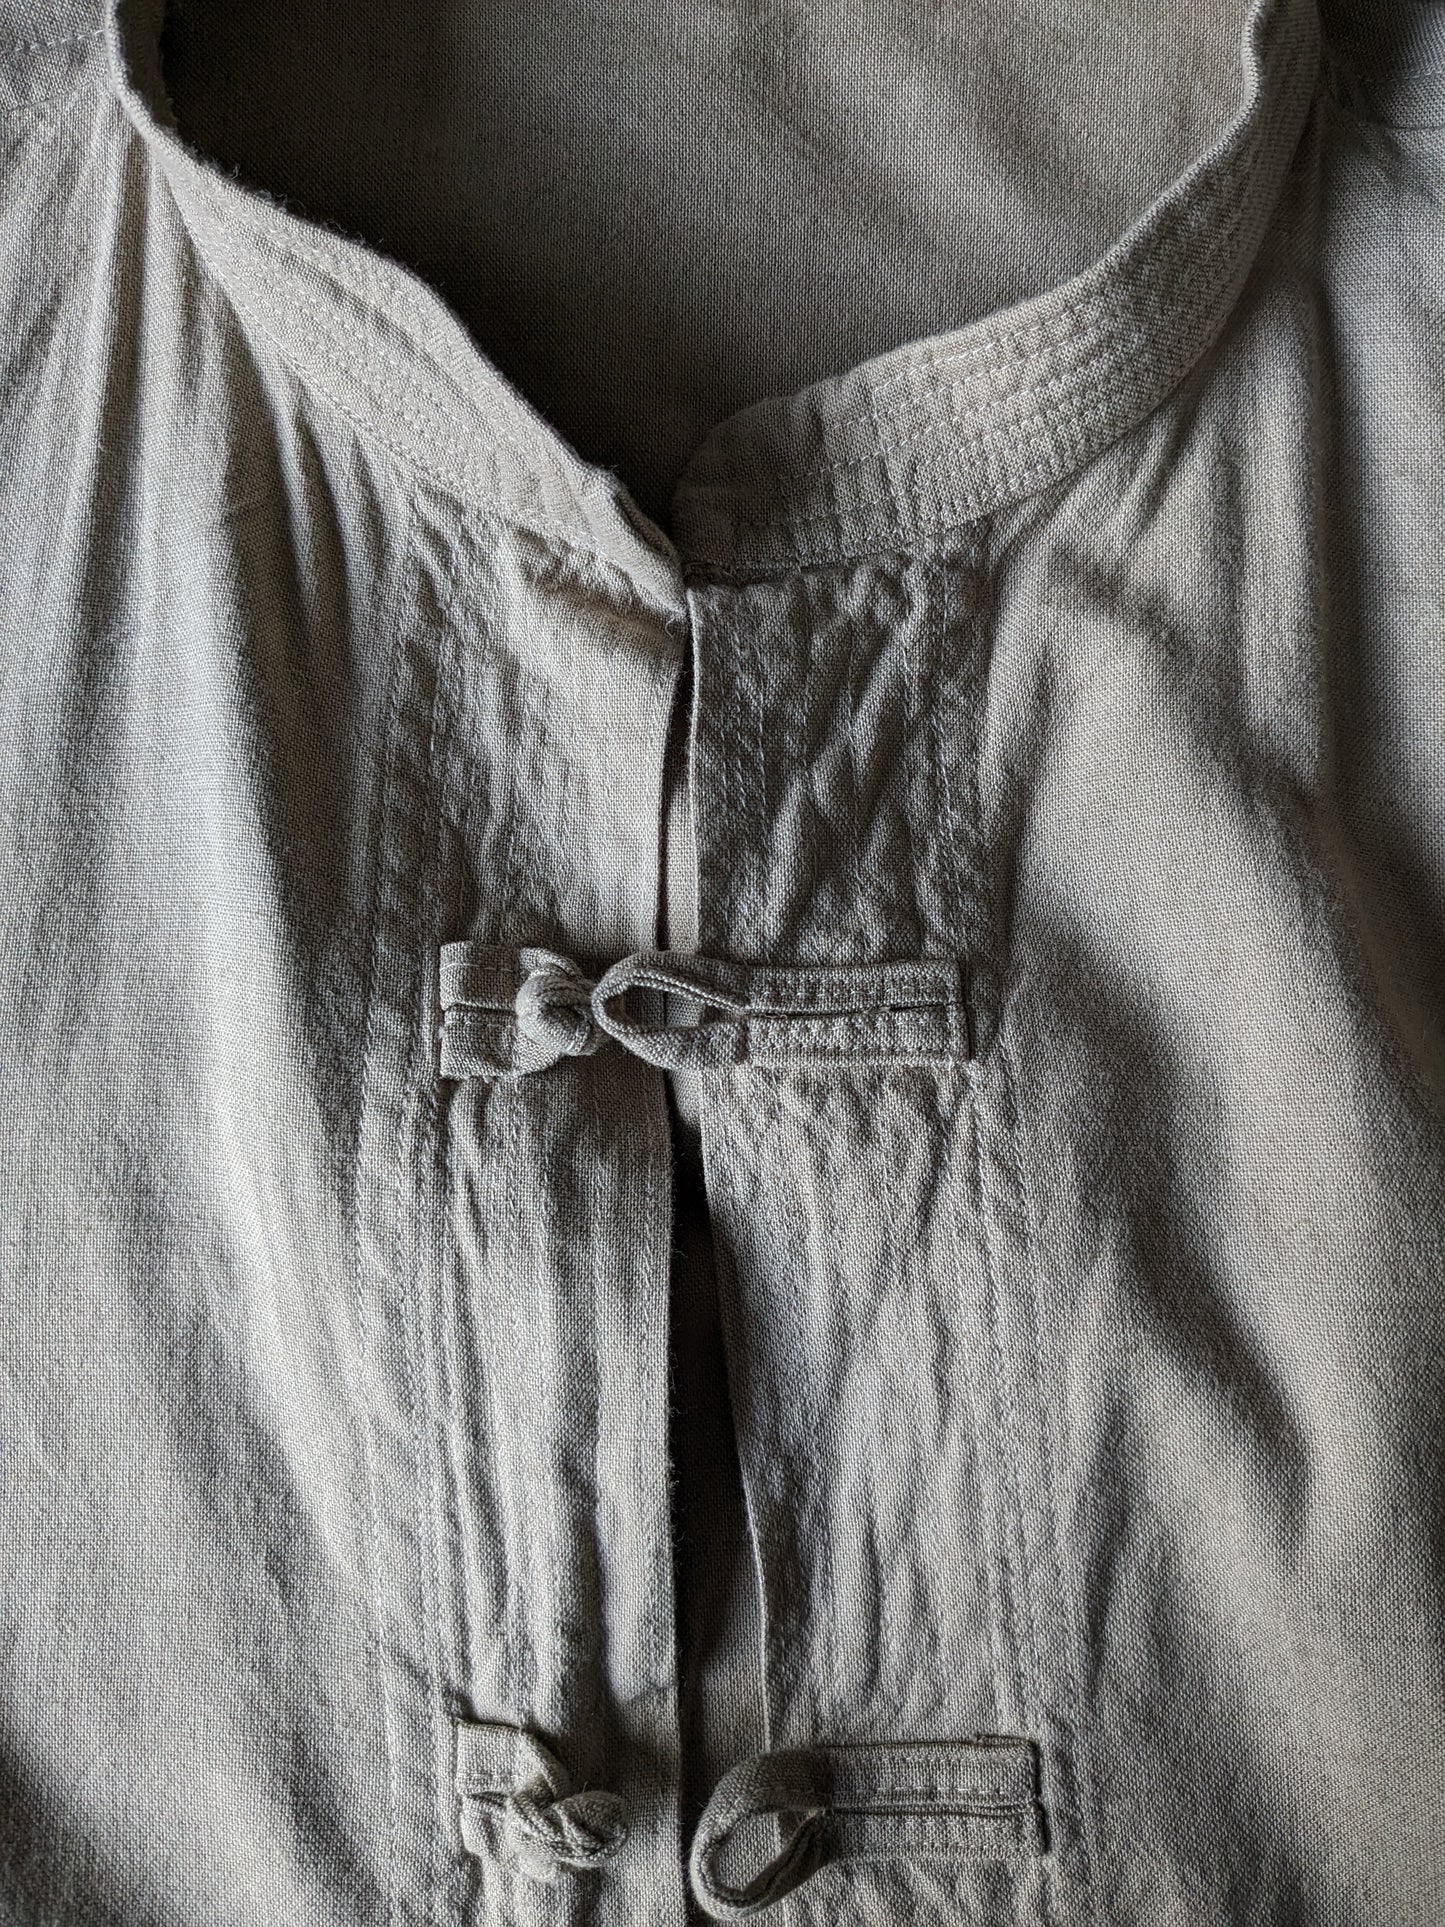 Vintage -Hemd mit Stoffknöpfen und MAO / Anheben / Bauernkragen. Beige gefärbt. Größe 2xl / xxl.